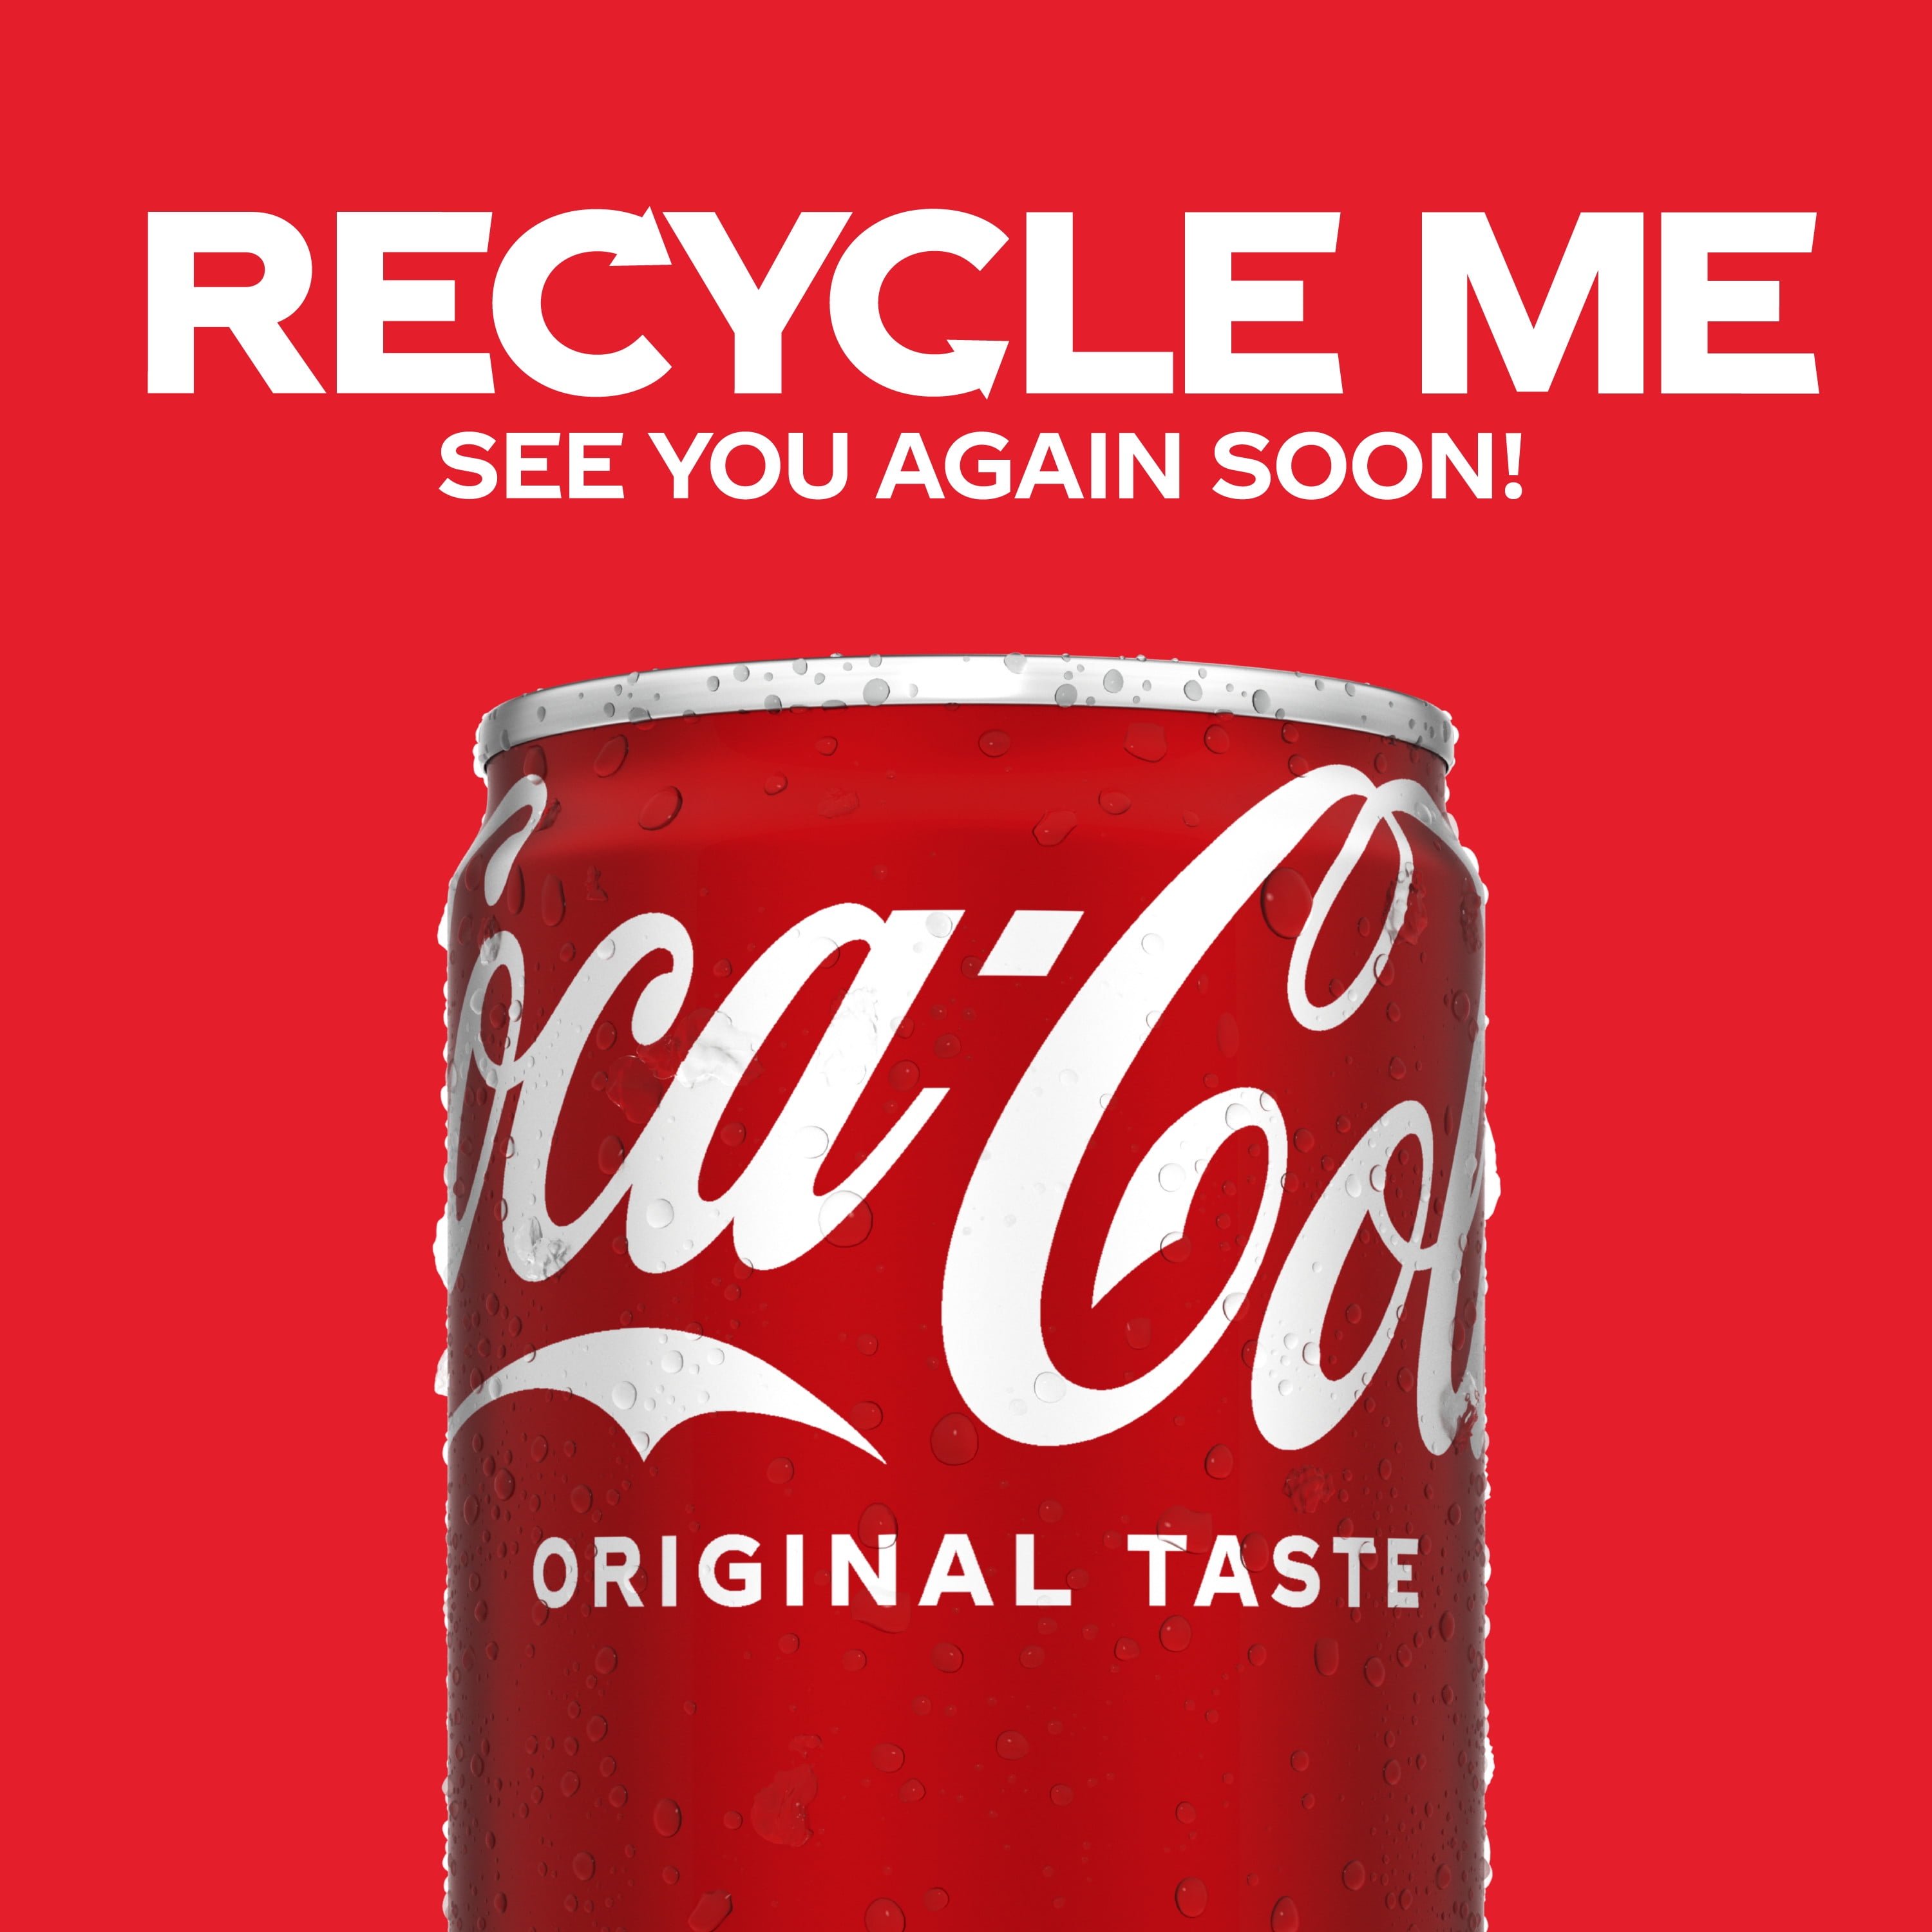 Coca-Cola® Soda Mini Cans, 10 pk / 7.5 fl oz - Kroger